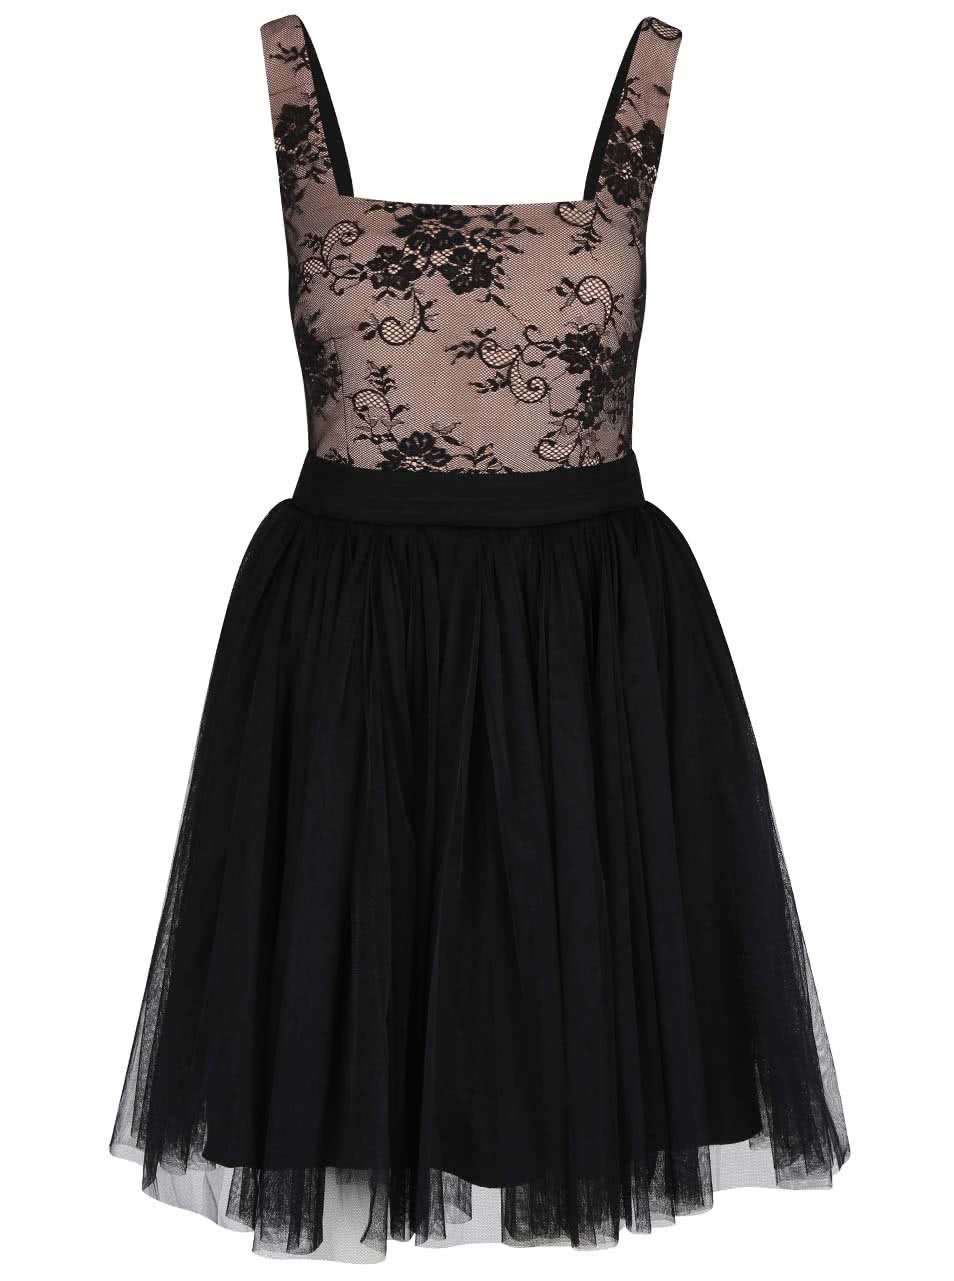 Béžovo-černé šaty s krajkovým topem Little Mistress